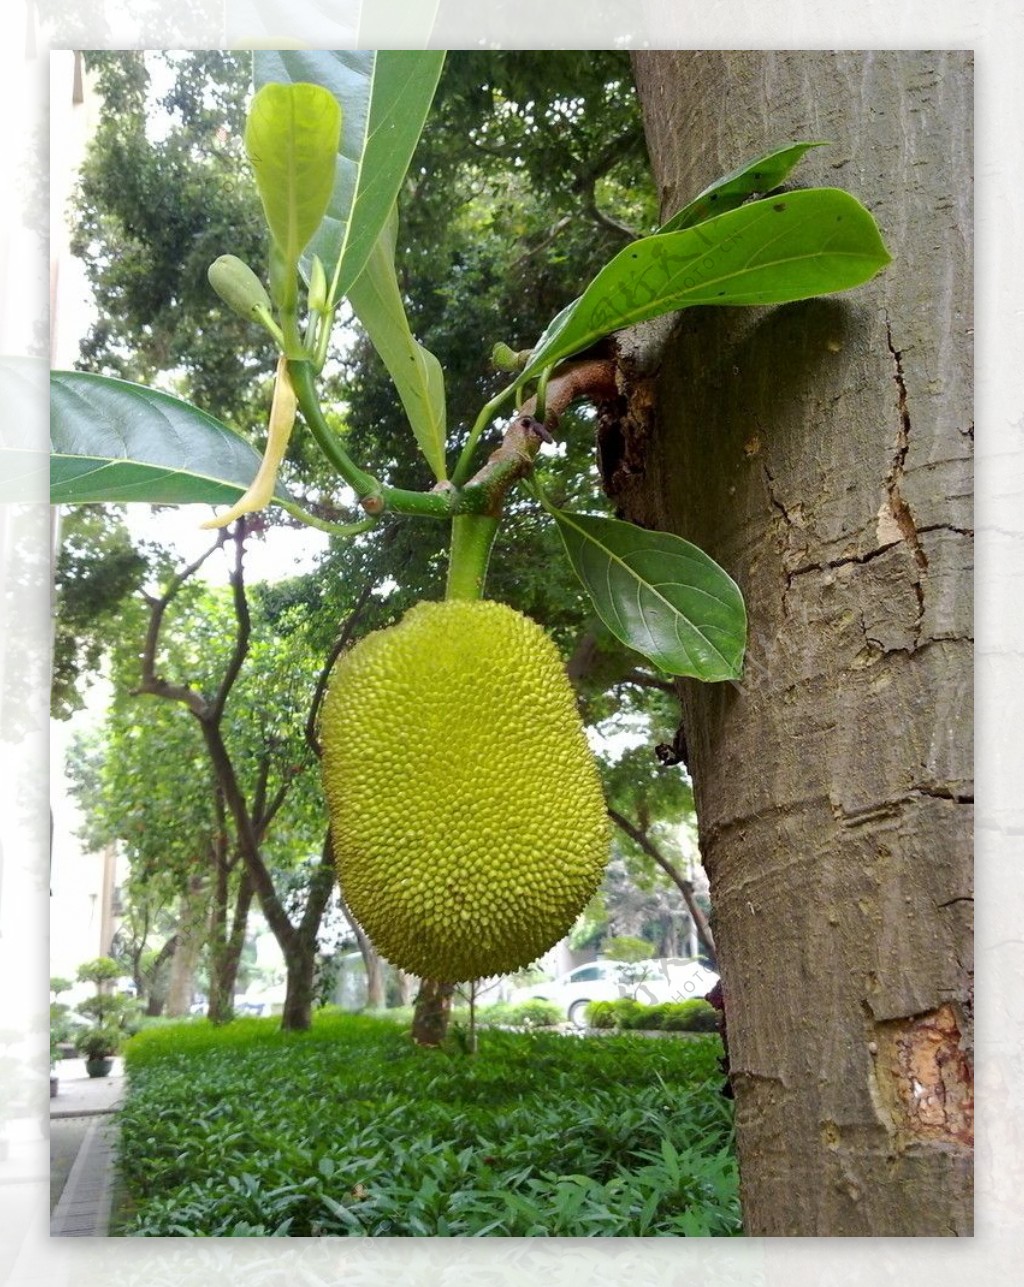 菠萝蜜树上高清摄影大图-千库网